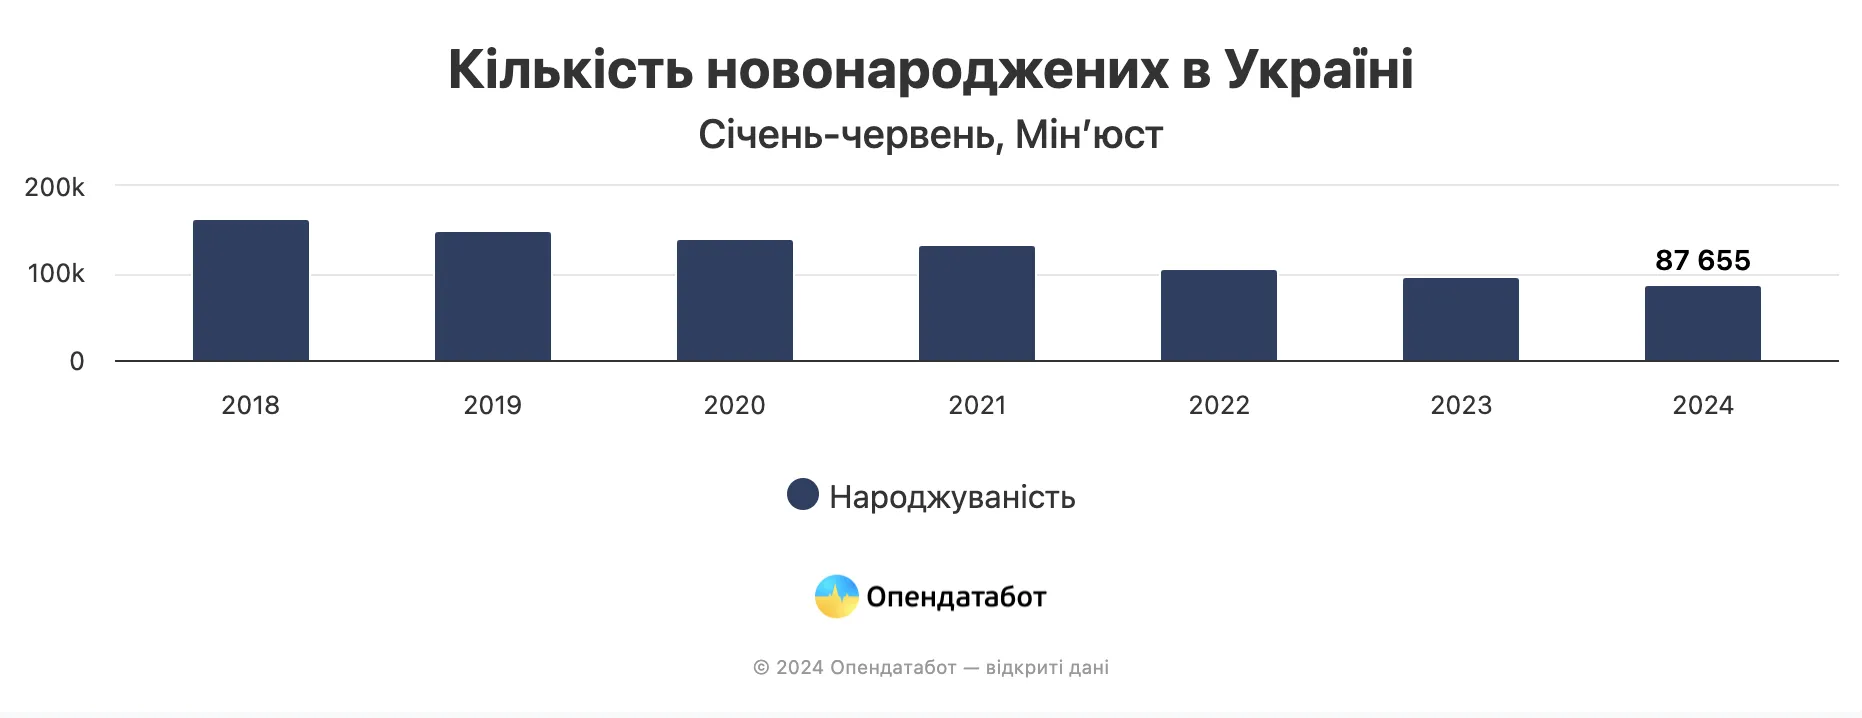 Статистика рождаемости в Украине за первое полугодие 2024 года